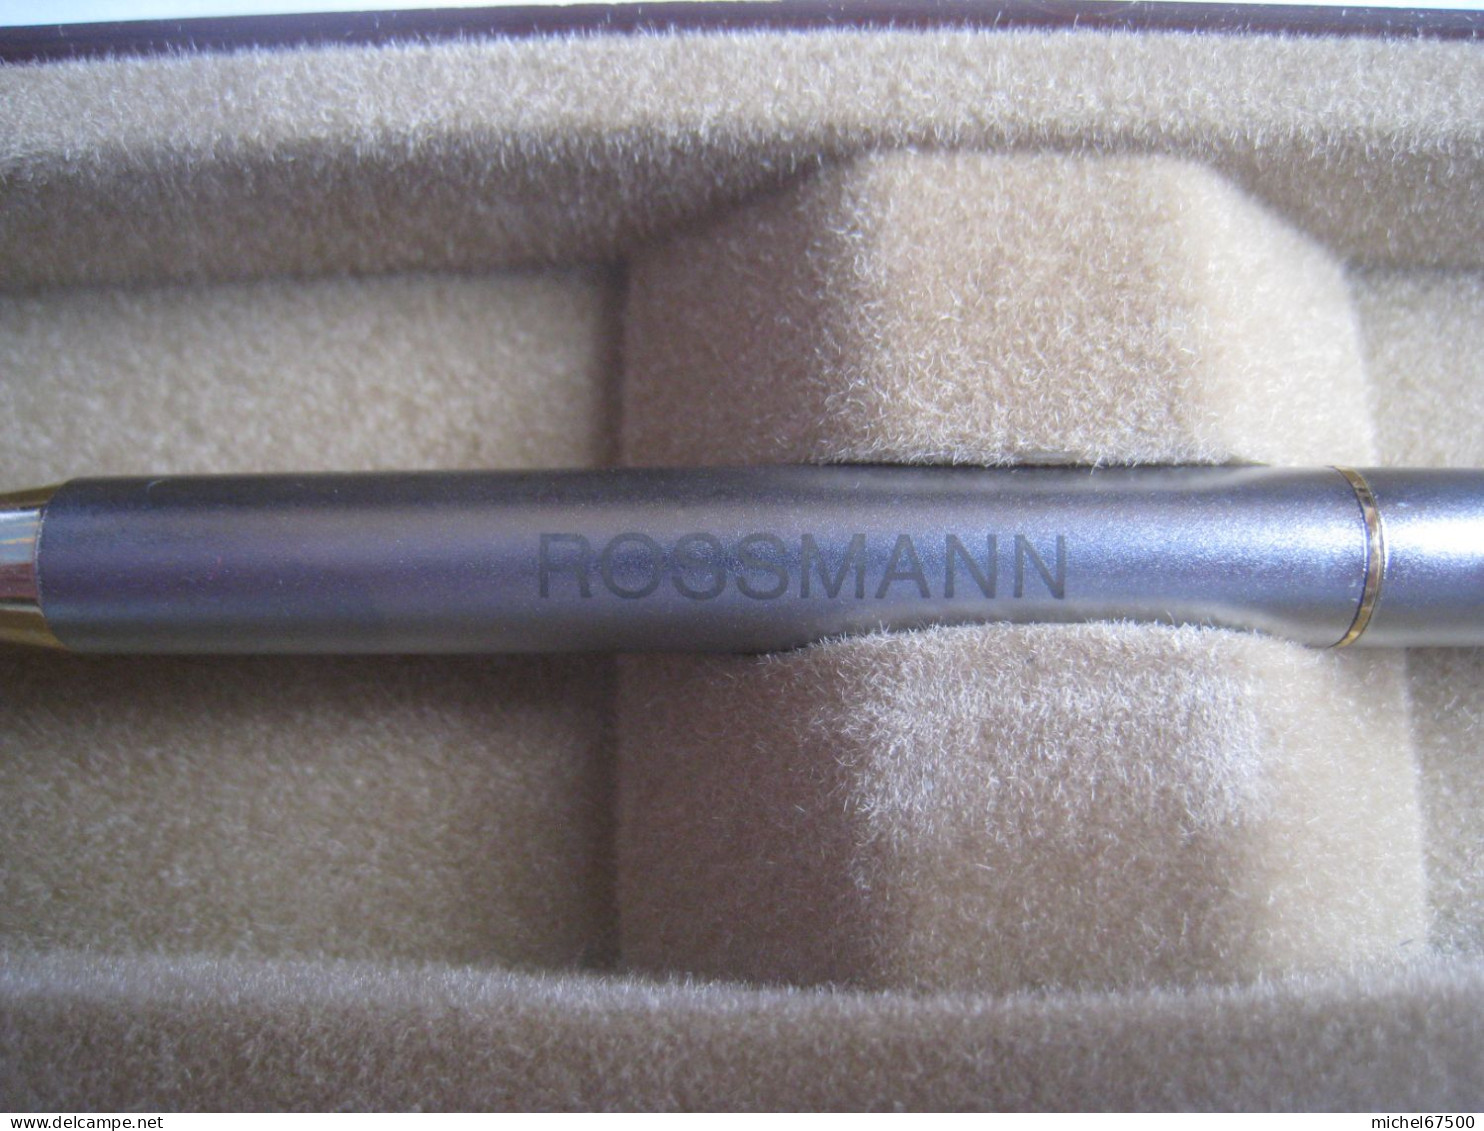 ROSSMANN - STYLO PUBLICITAIRE - Pens